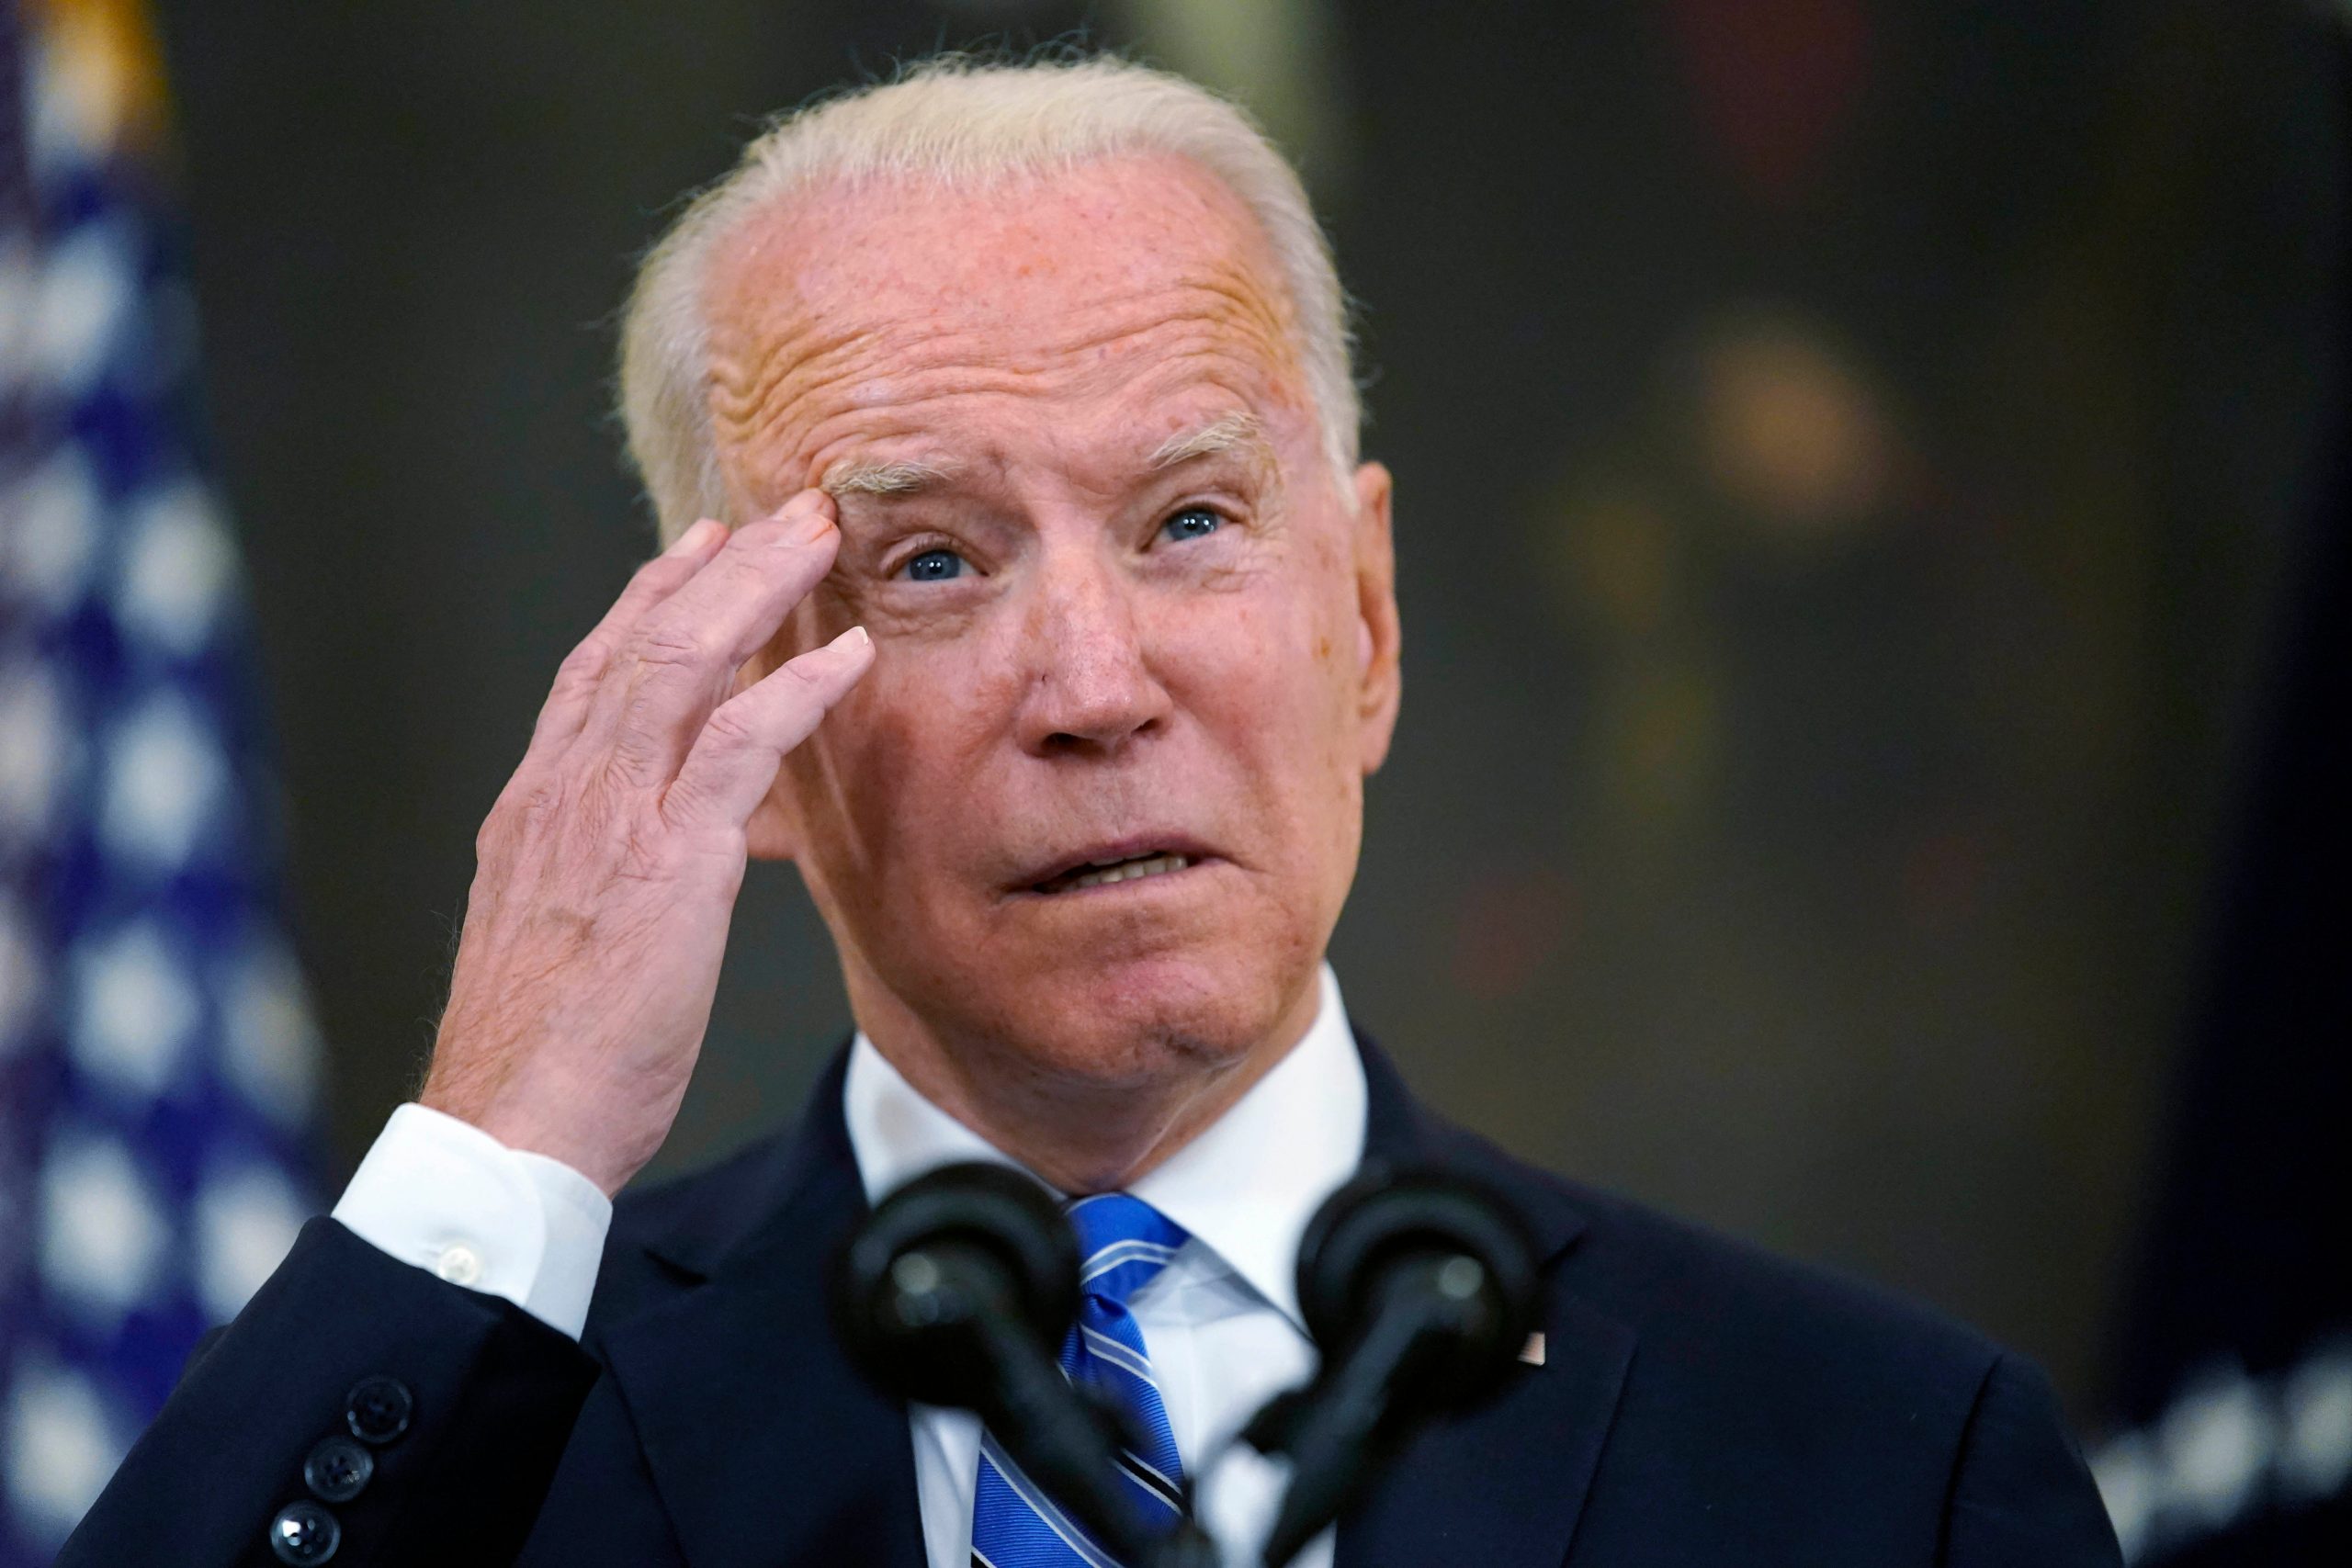 Joe Biden to meet Iraqi PM, discuss withdrawal of US troops